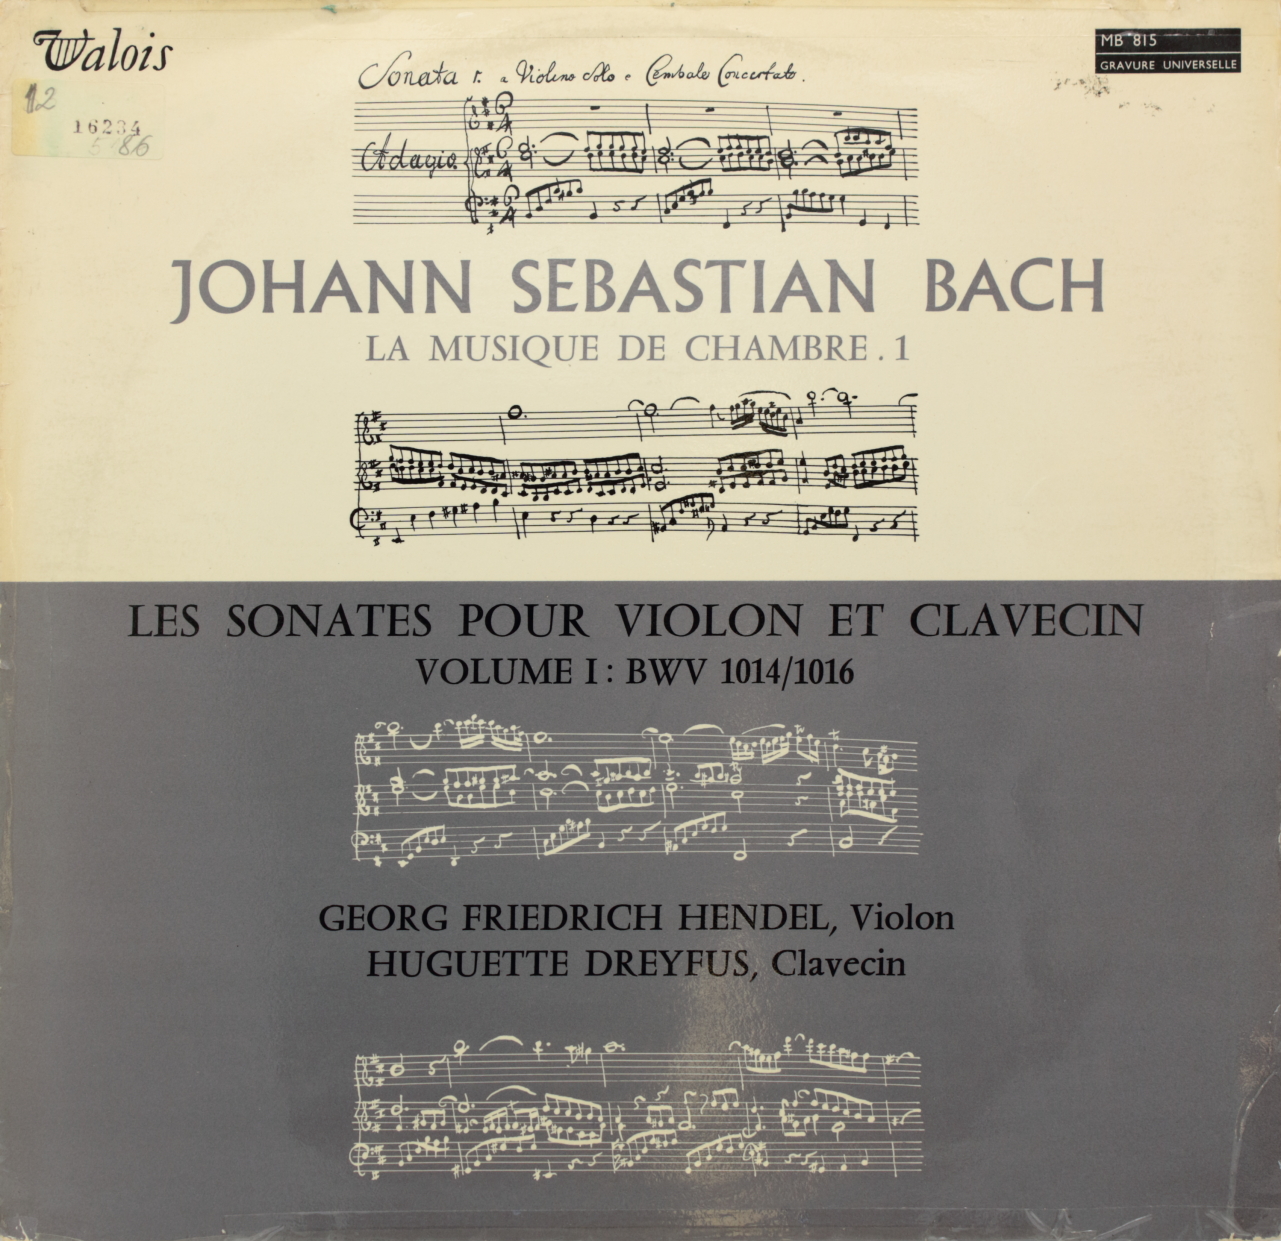 Bach: La musique de chambre 1; Les sonates pour violon et clavecin Volume I